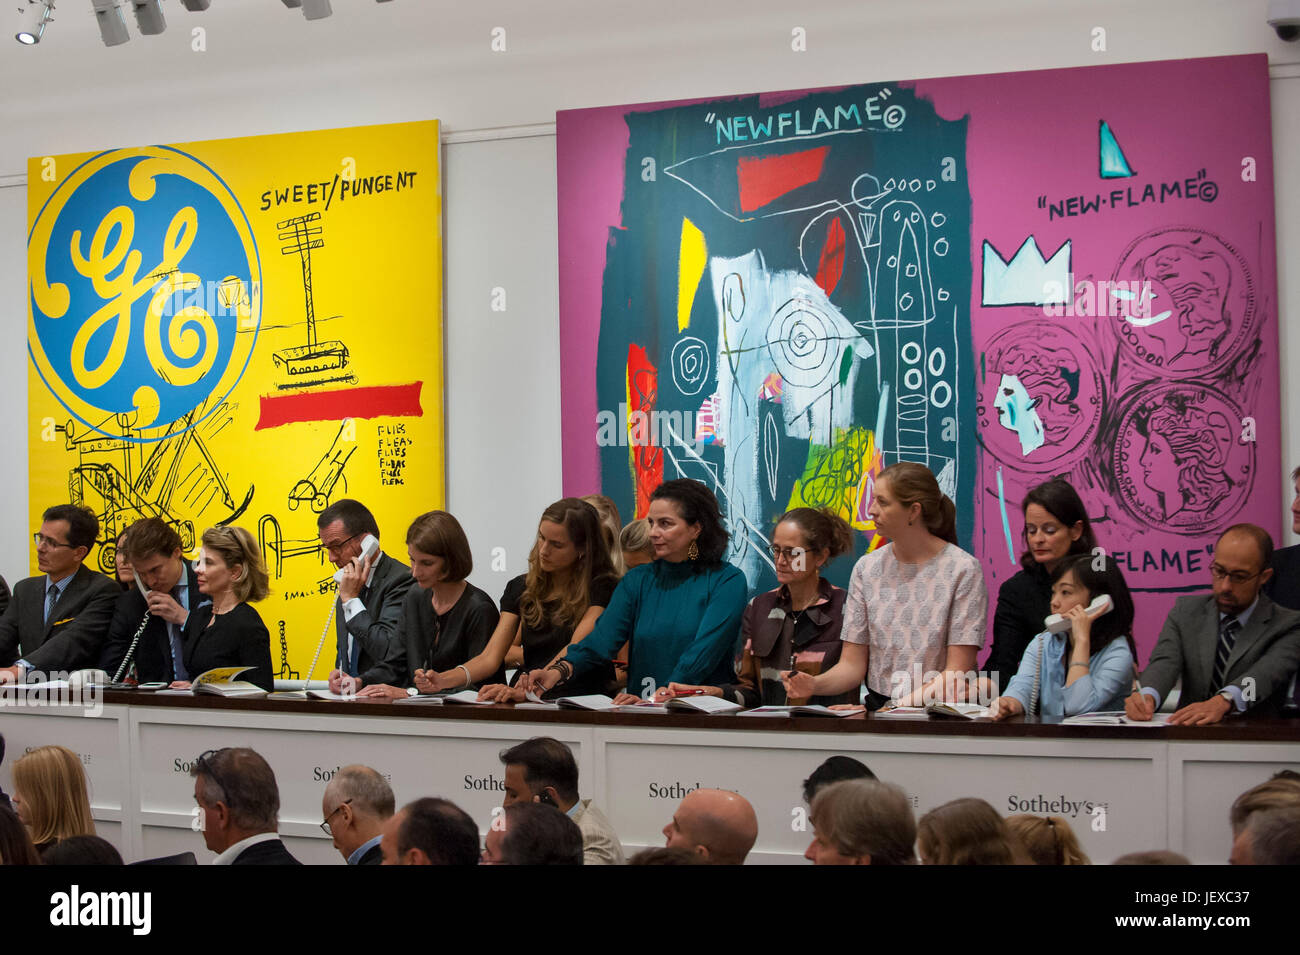 Londres, Royaume-Uni. 28 juin 2017. Sotheby's offre du personnel pour le compte de clients de téléphone en face de (L à R), 'Sweet' piquante, 1984-1985, un travail de collaboration par Andy Warhol et Basquiat Jean-Michael vendus pour un prix d'adjudication d'GBP3.8 m (estimation GBP1.4-1.8m) et le 'nouveau', 1985), un travail de collaboration par Andy Warhol et Basquiat Jean-Michael vendus pour un prix d'adjudication d'EUR2m (estimation GBP1.7-2.2m) chez Sotheby's Contemporary Art evening sale à New Bond Street, qui a comporté des travaux de pionnier dans le genre artistique. Crédit : Stephen Chung / Alamy Live News Banque D'Images